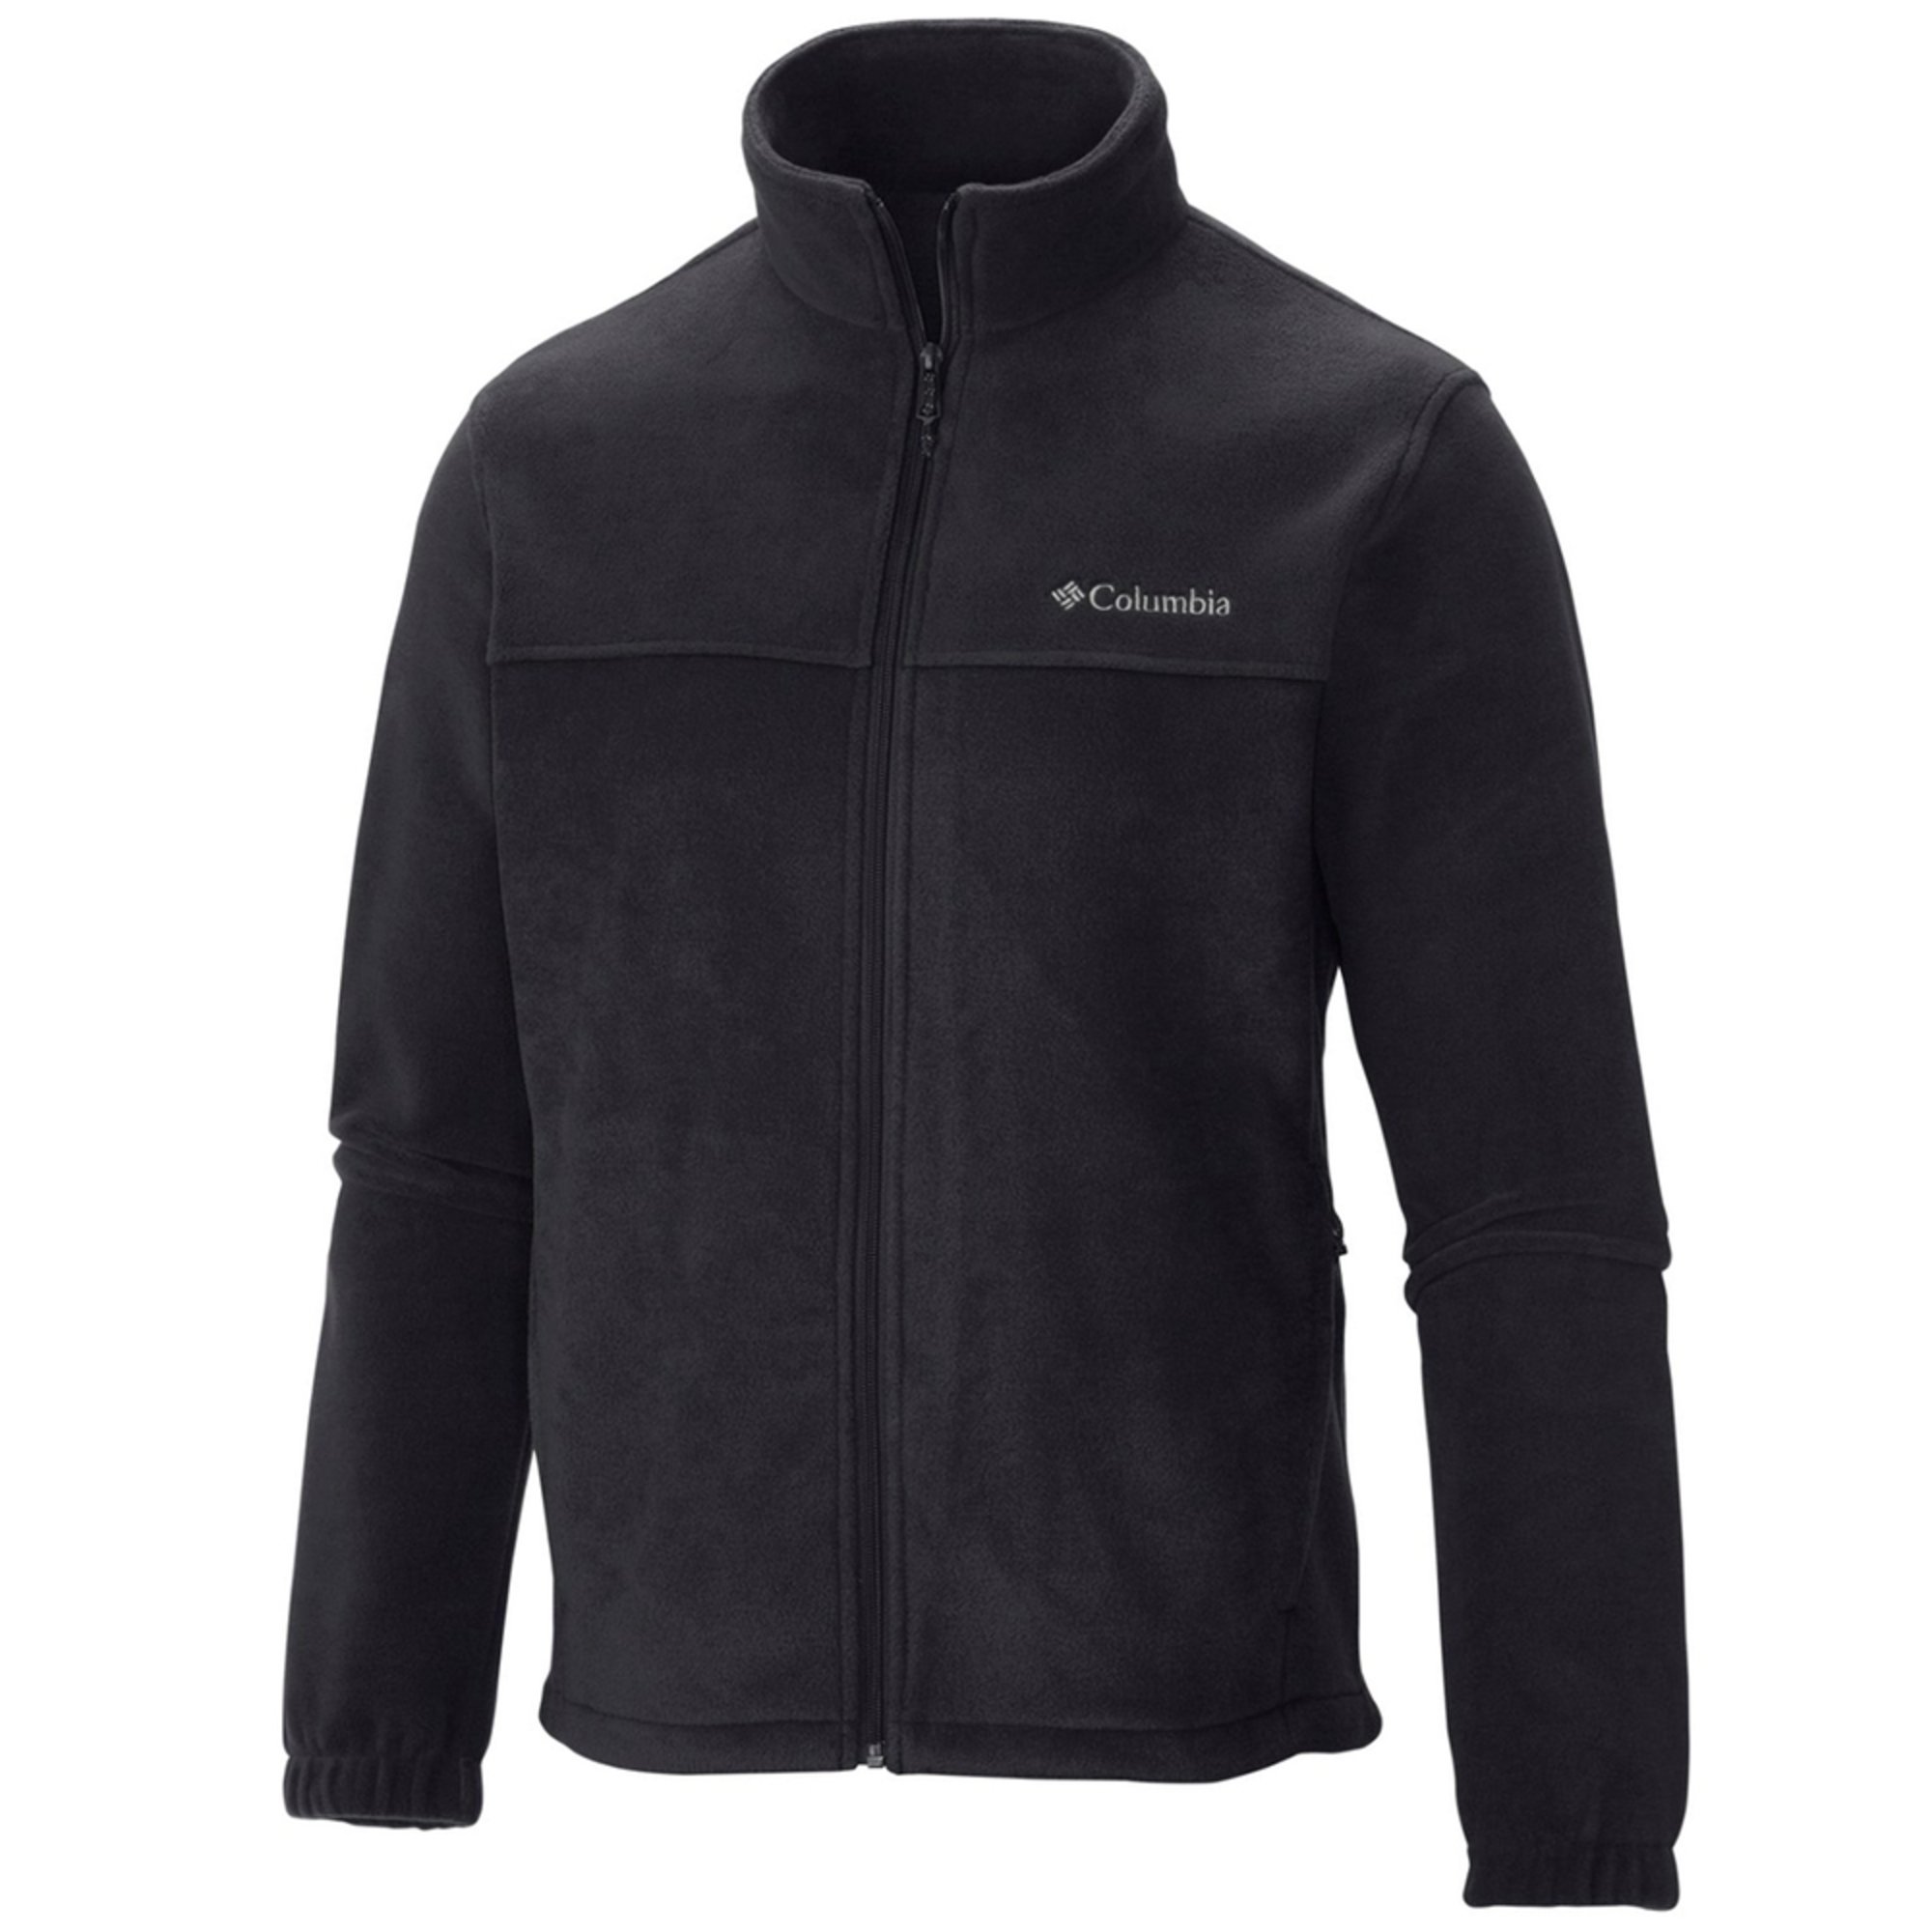 Columbia Men's Steens Mountain Fleece Jacket | Outdoor Jackets & Coats ...